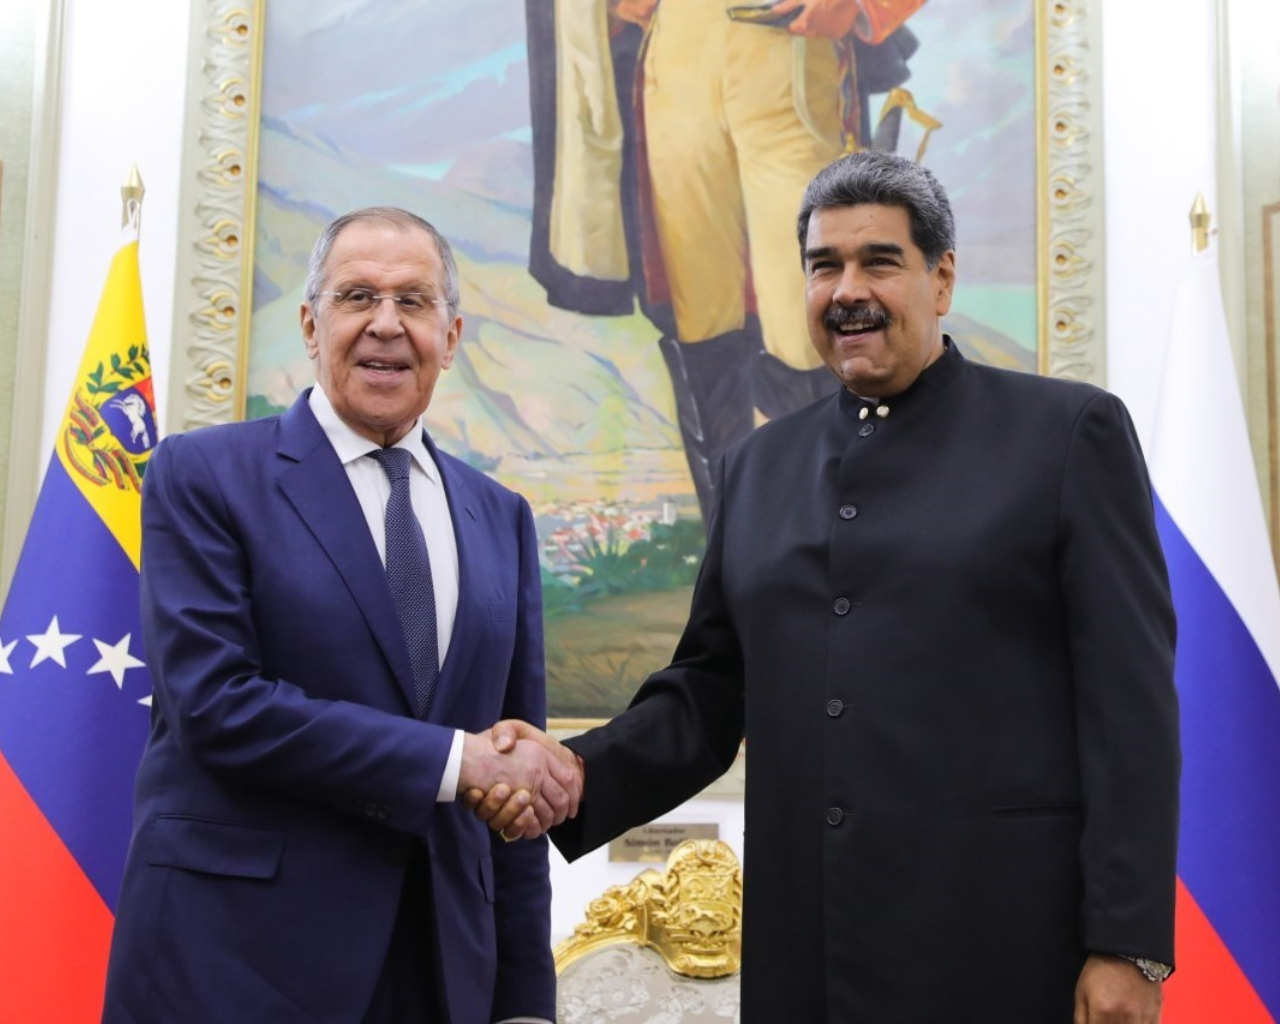 El presidente de Venezuela, Nicolás Maduro, con el ministro de Exteriores de Rusia, Sergei Lavrov, durante una reunión en Caracas